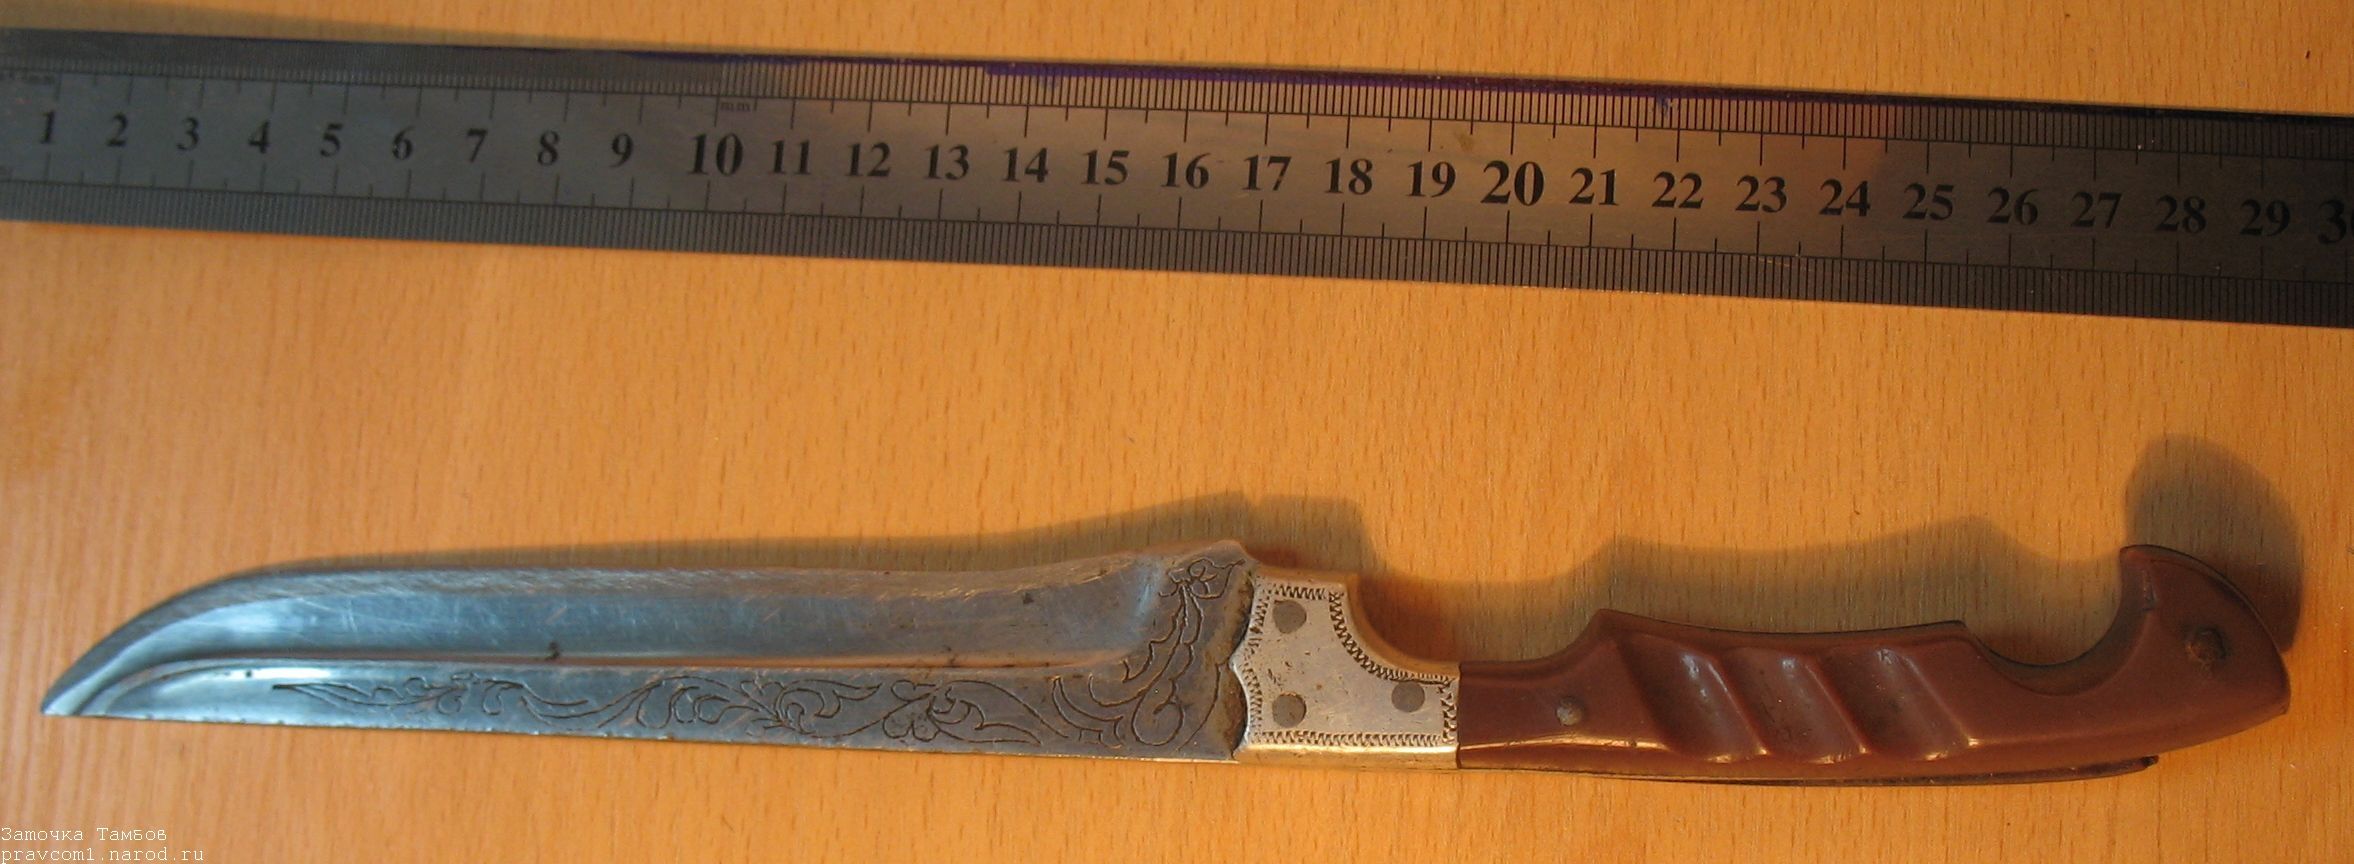 Кухонный "персидский" нож